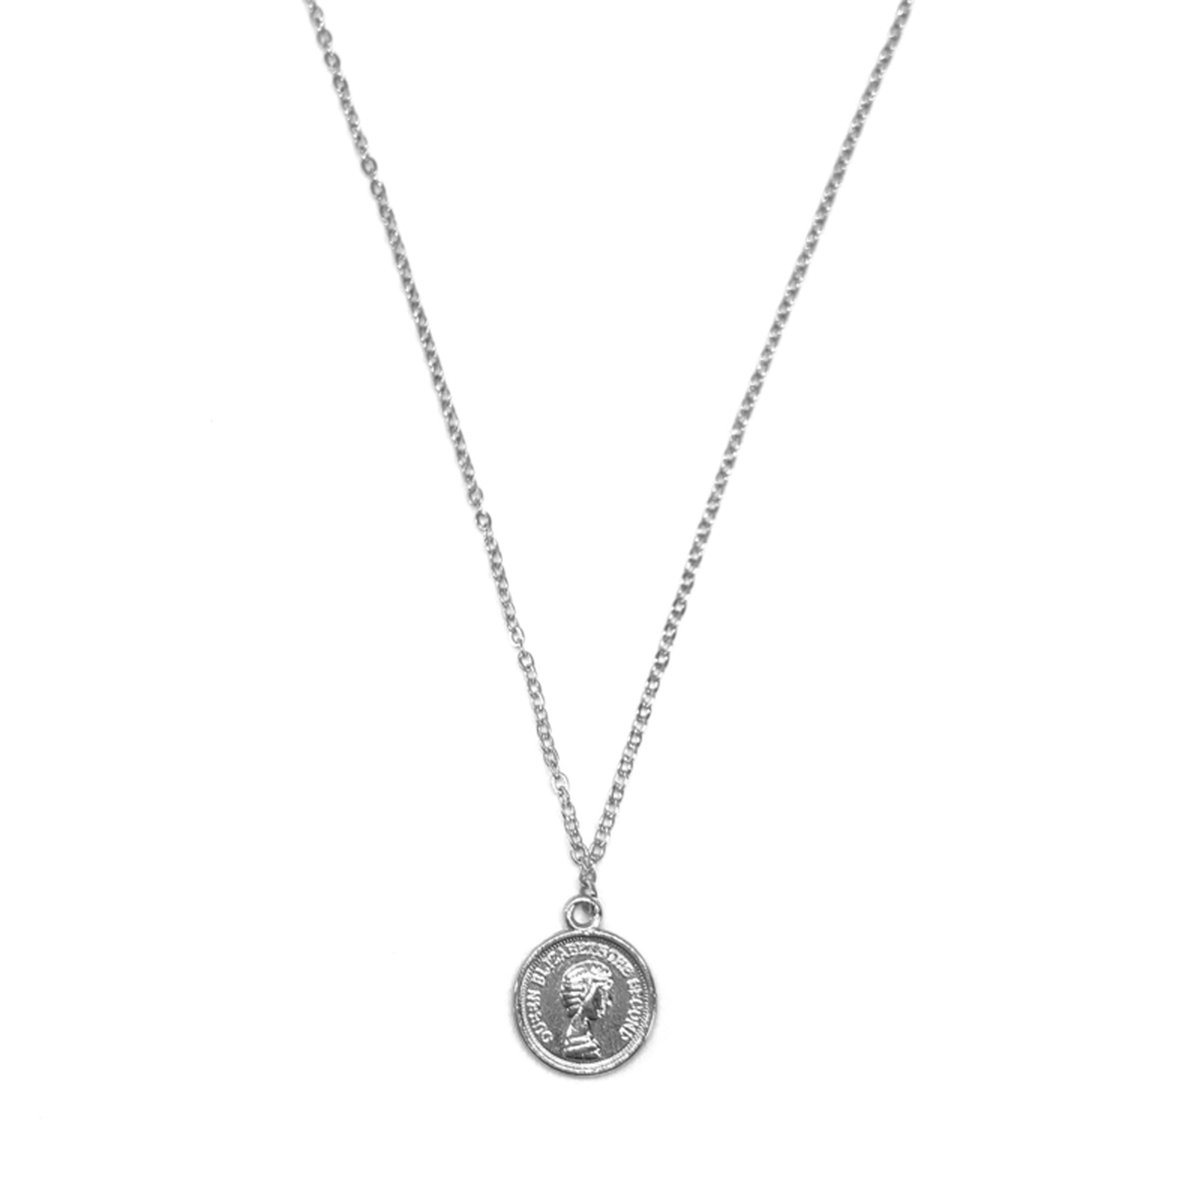 Big Elizabeth coin necklace - silver